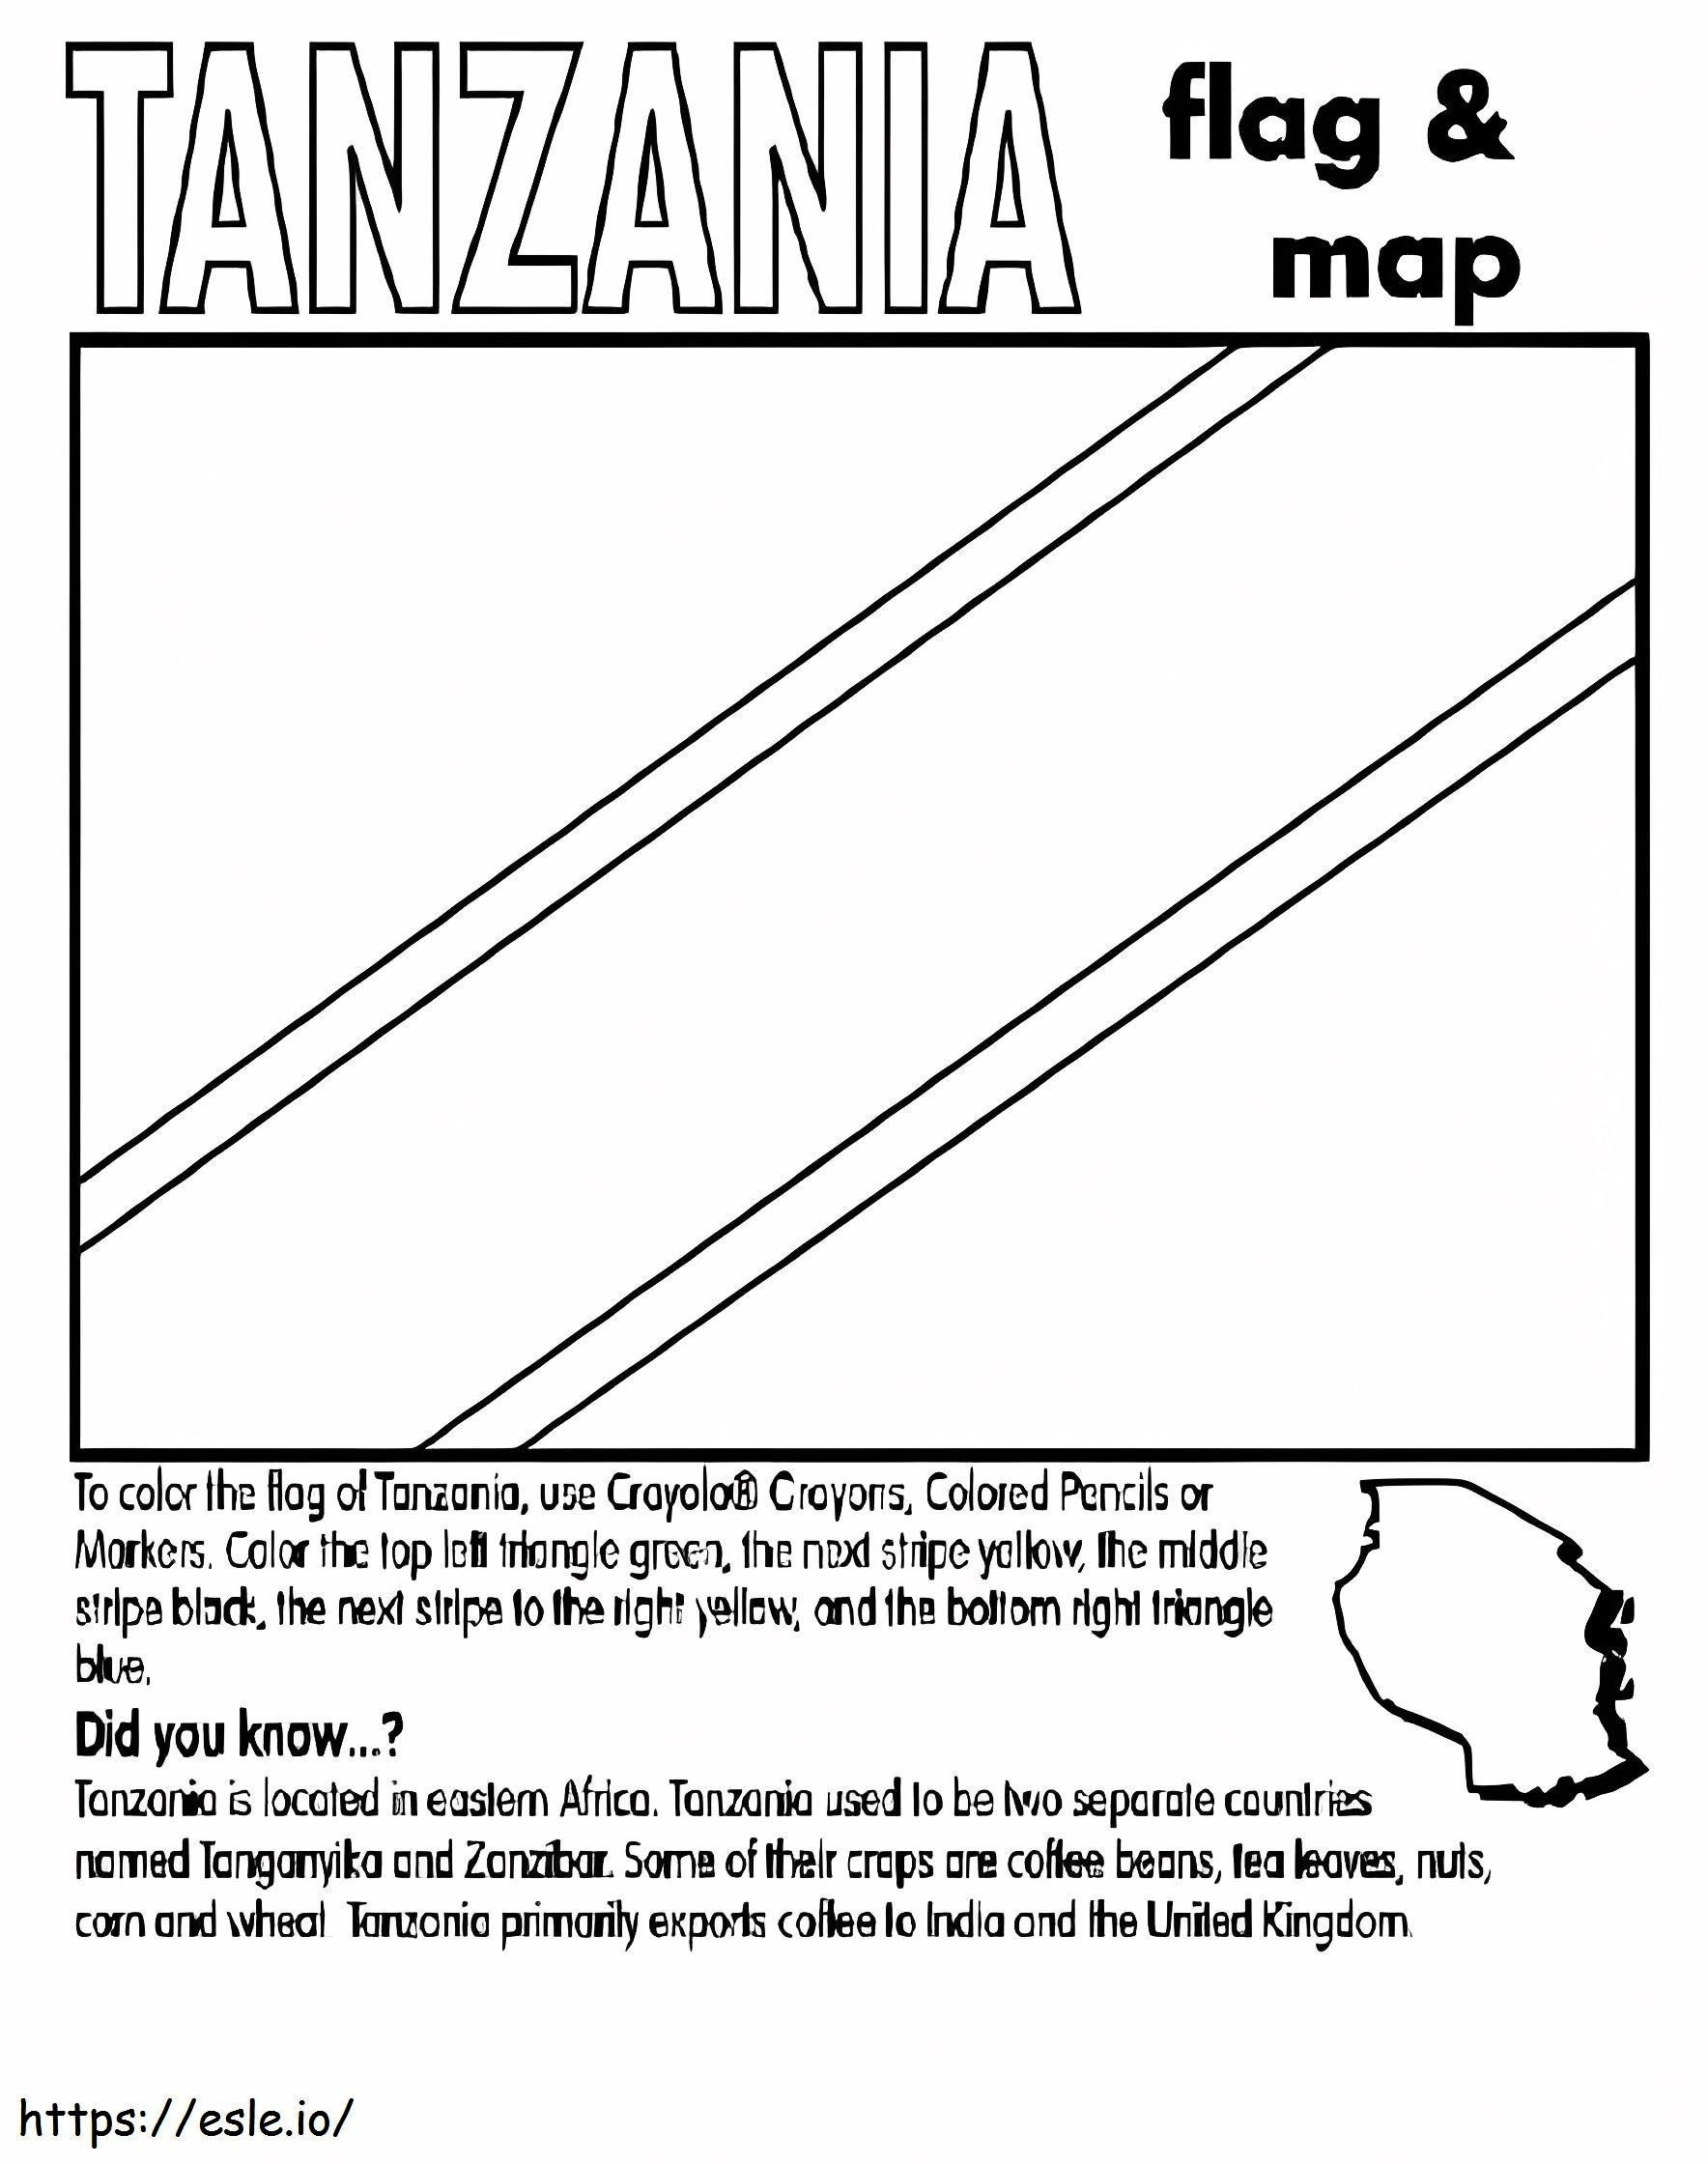 Bandiera e mappa della Tanzania da colorare